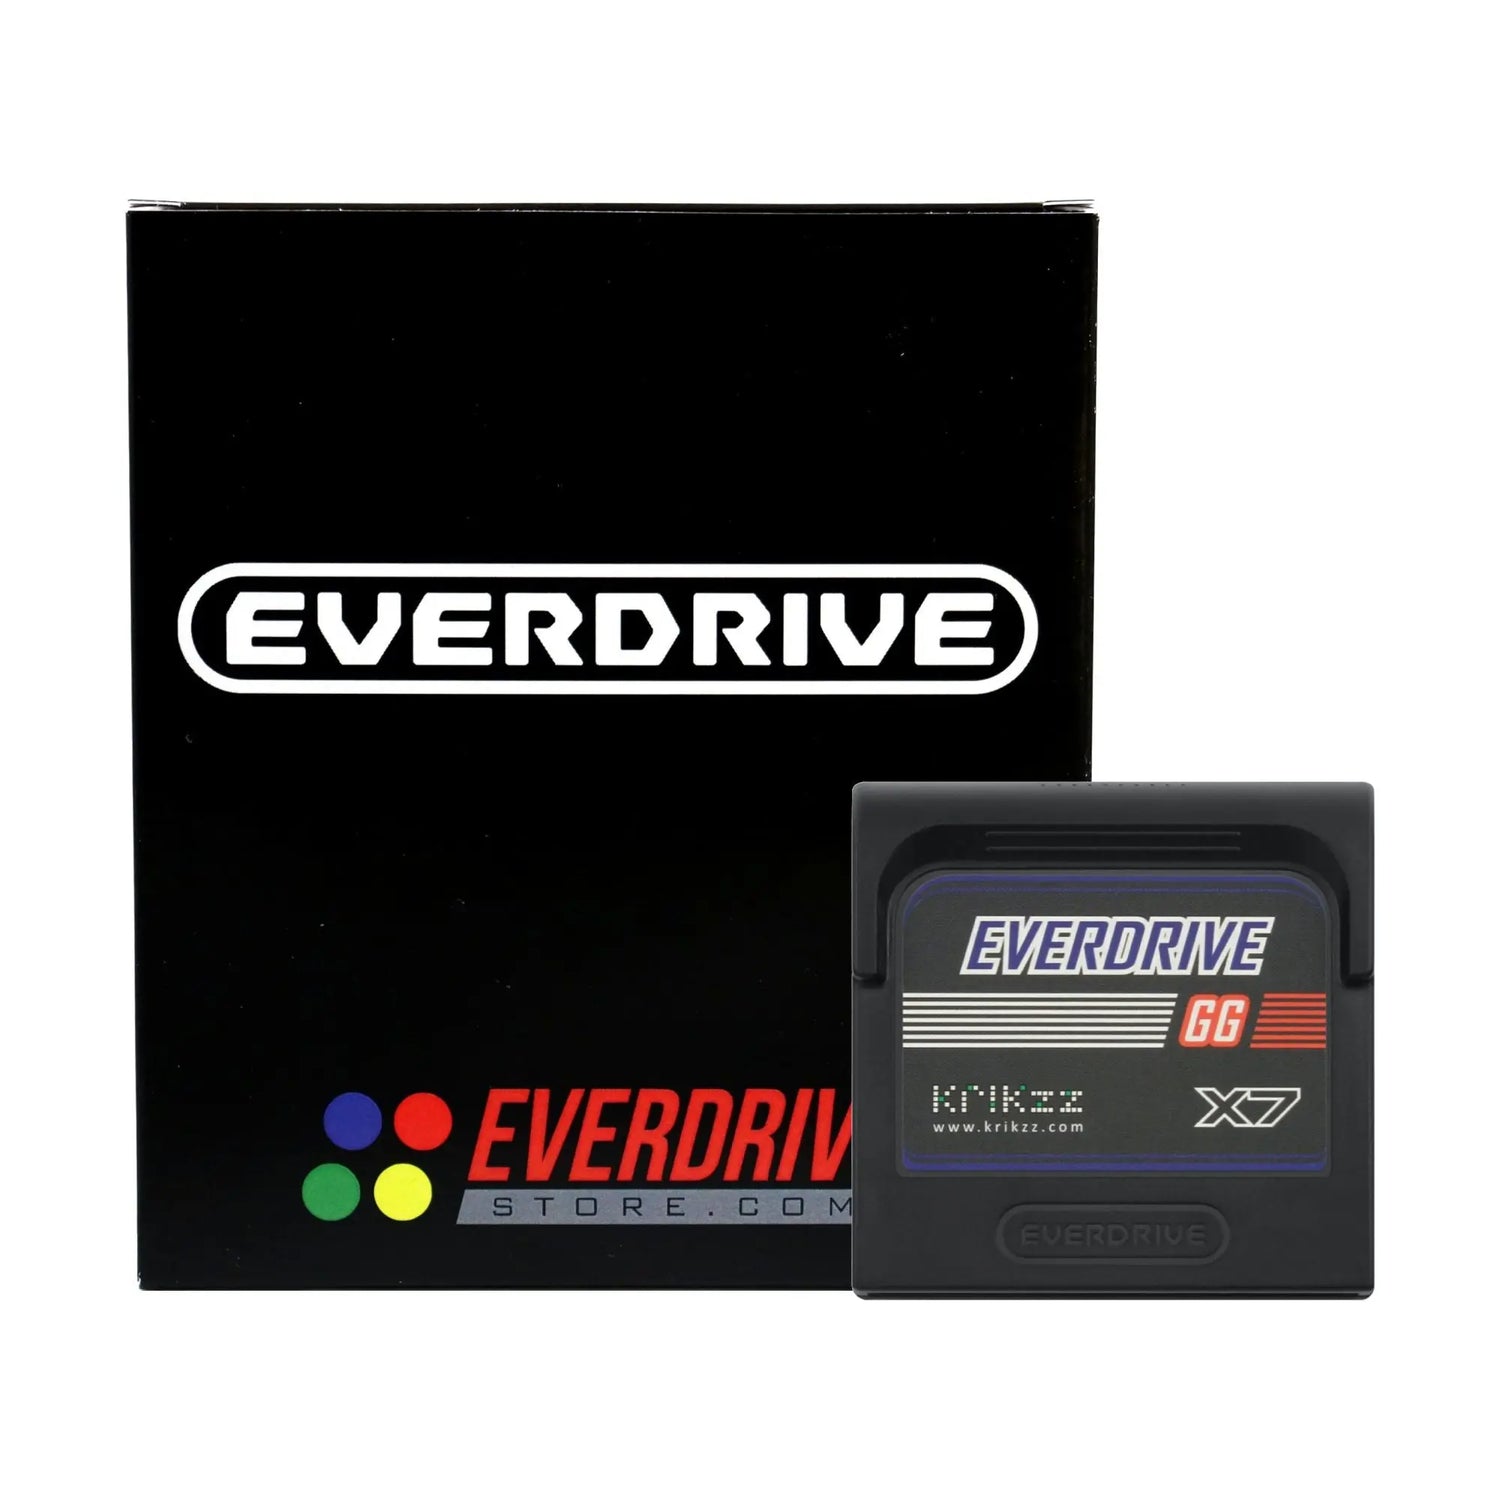 Everdrive GG X7 - EverdriveStore.com